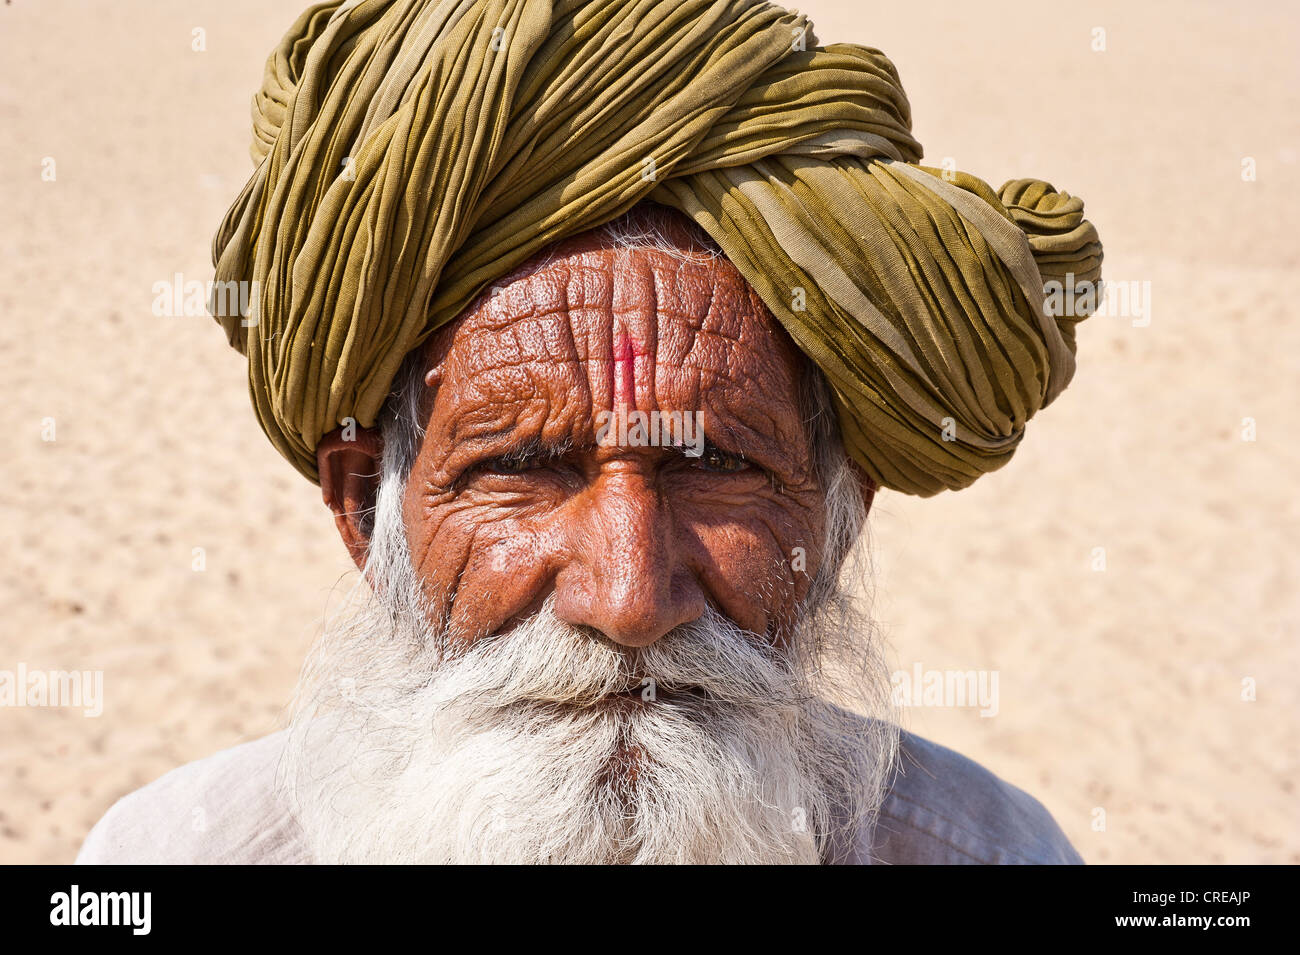 Porträt von einem älteren Rajasthani, indischer Mann mit einem grauen Bart mit traditionellen Turban, Thar-Wüste, Rajasthan, Indien Stockfoto